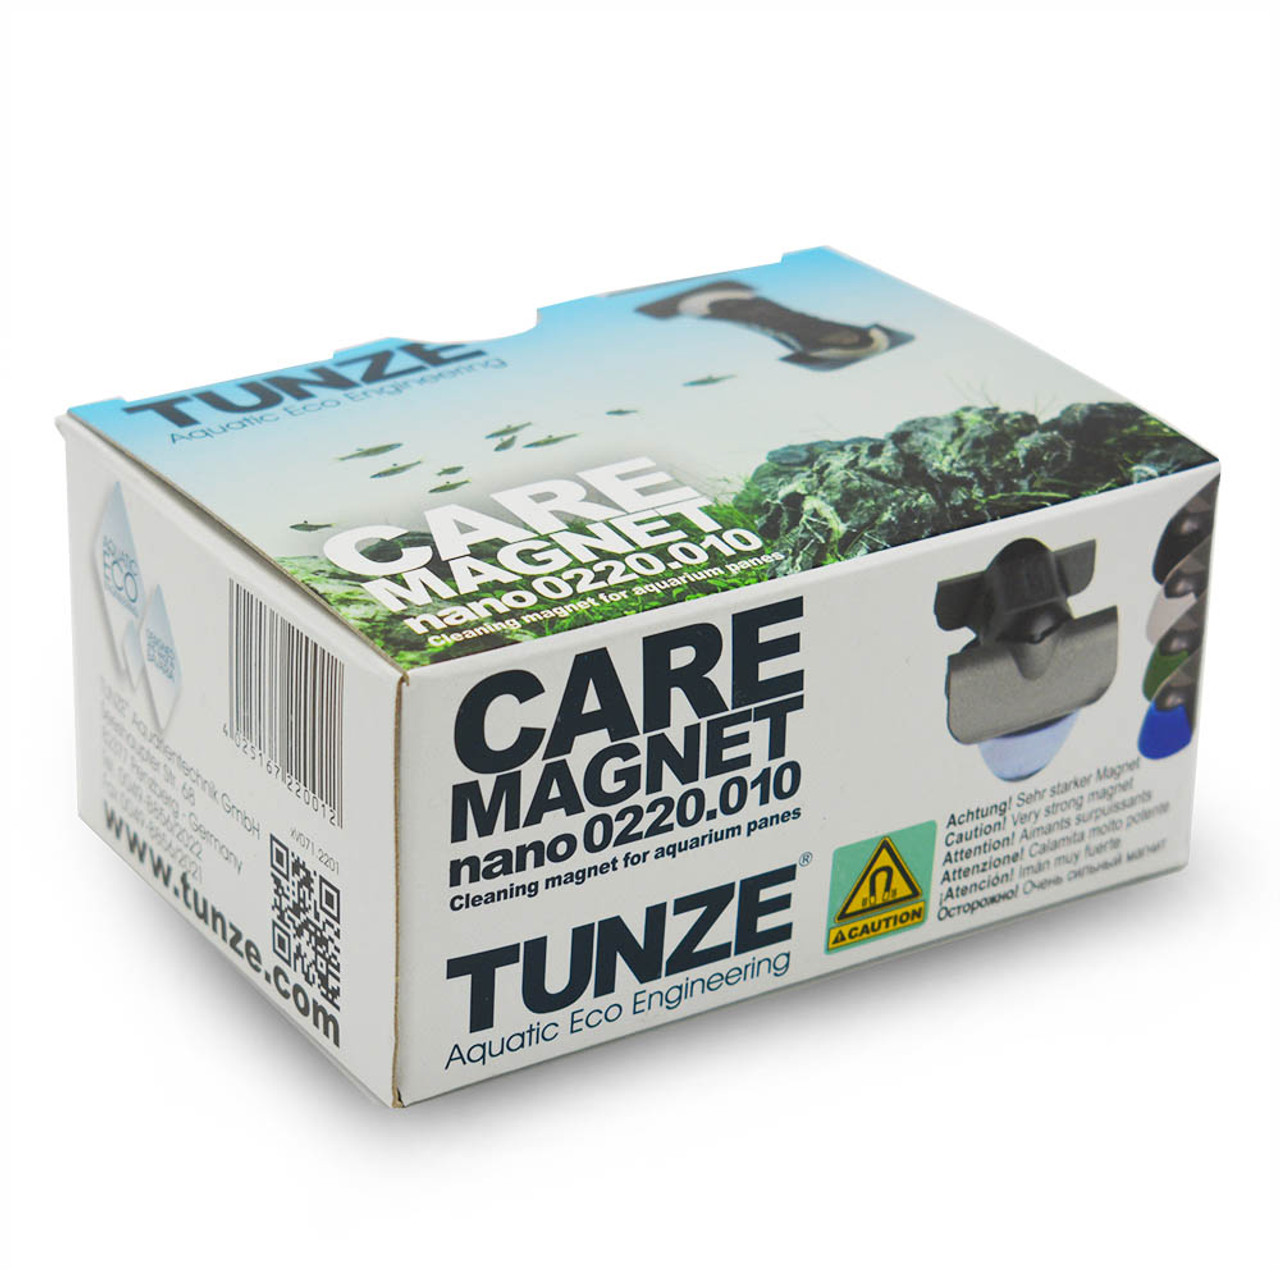 Tunze Care Magnet Edelstahlklingen, 3 St.(0220.155) - Meerwasseraquar